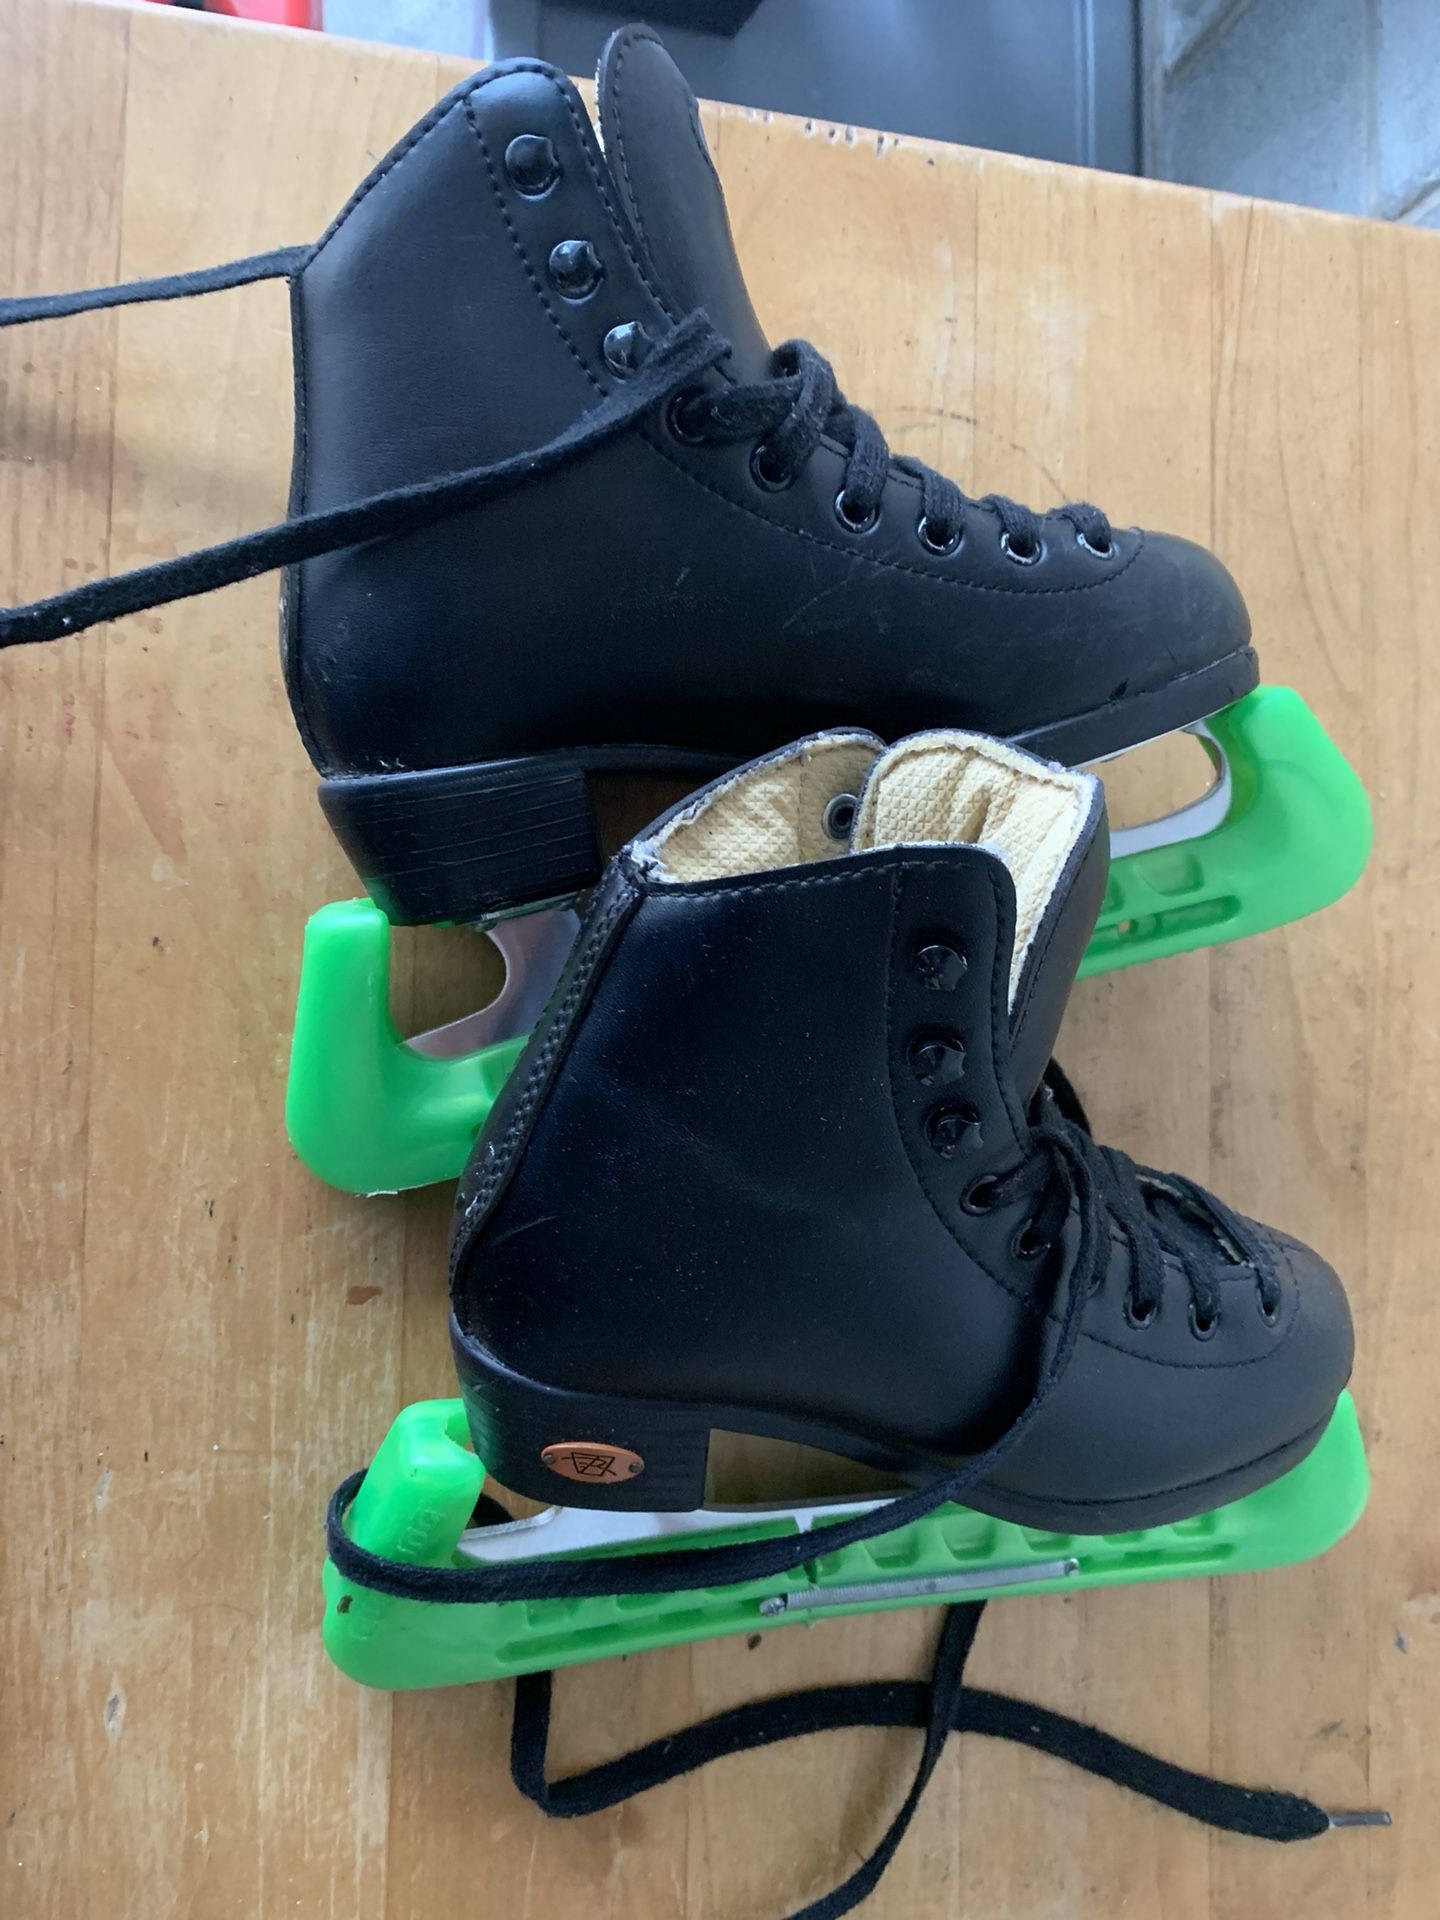 Ice Skating Shoe